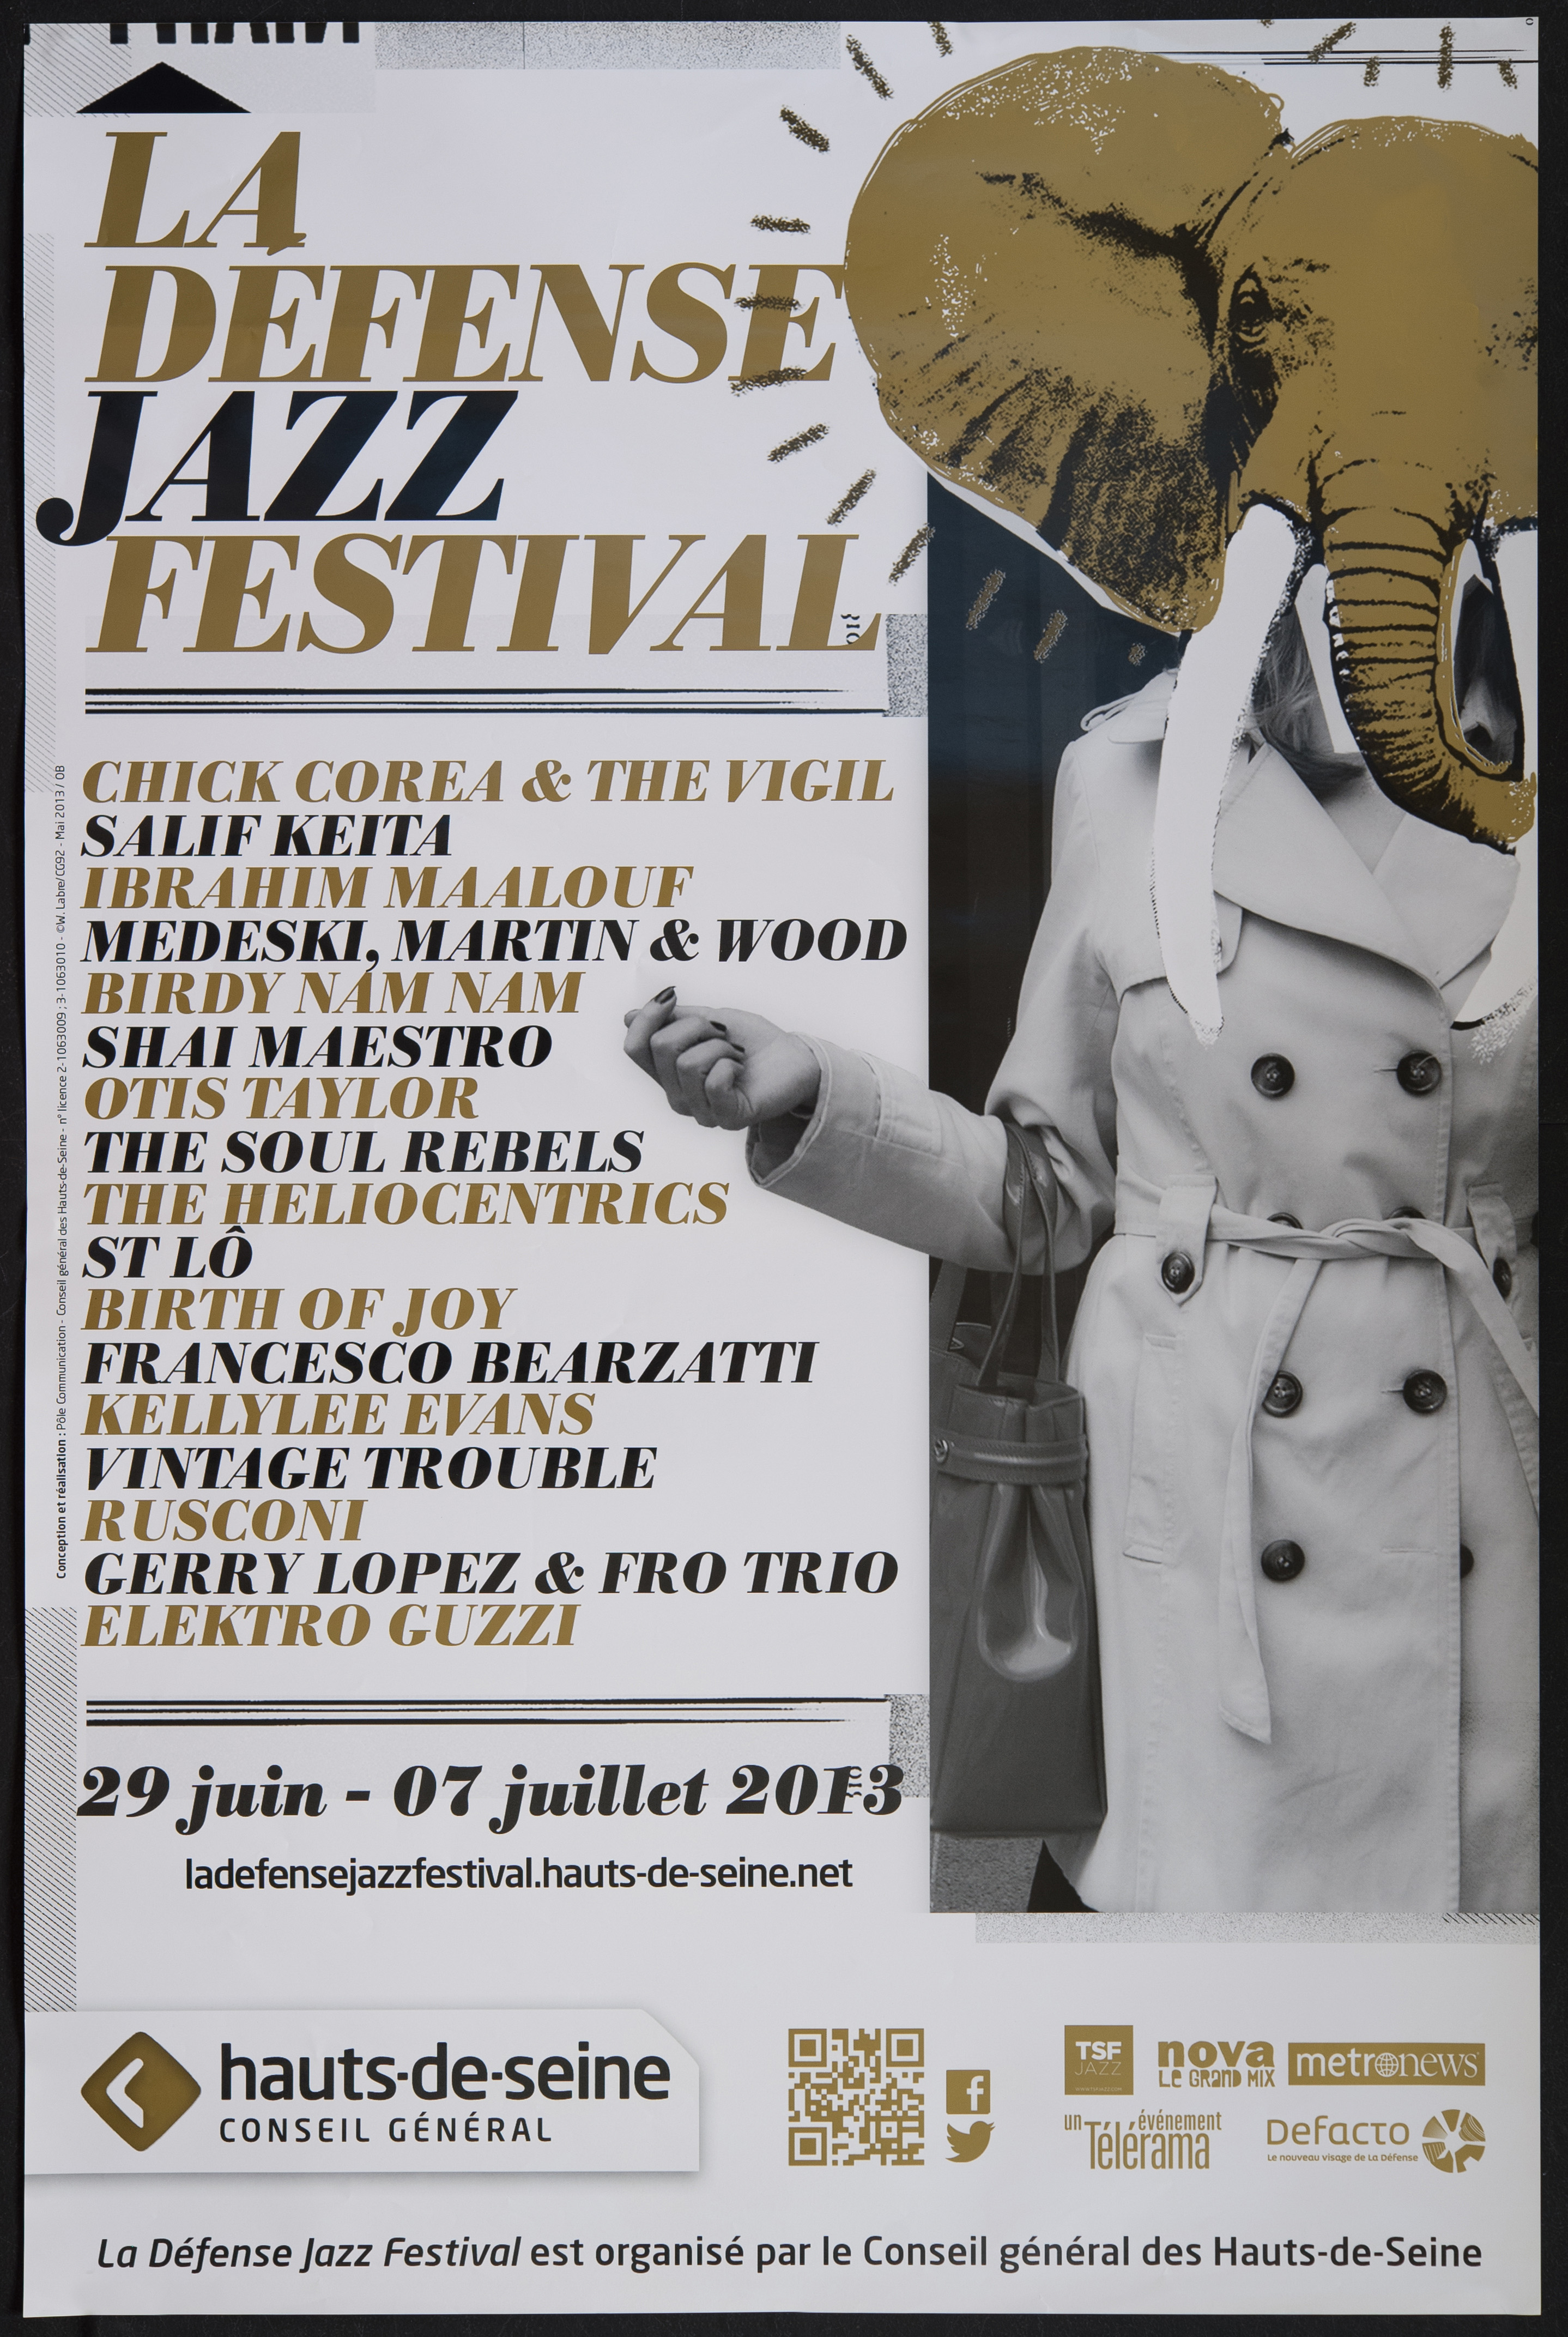 La Défense Jazz festival 29 juin-7 juillet 2013 [… liste des groupes] /Willy Labre. - CG 92, 2013. - 1 affiche coul., 118 x 78 cm.